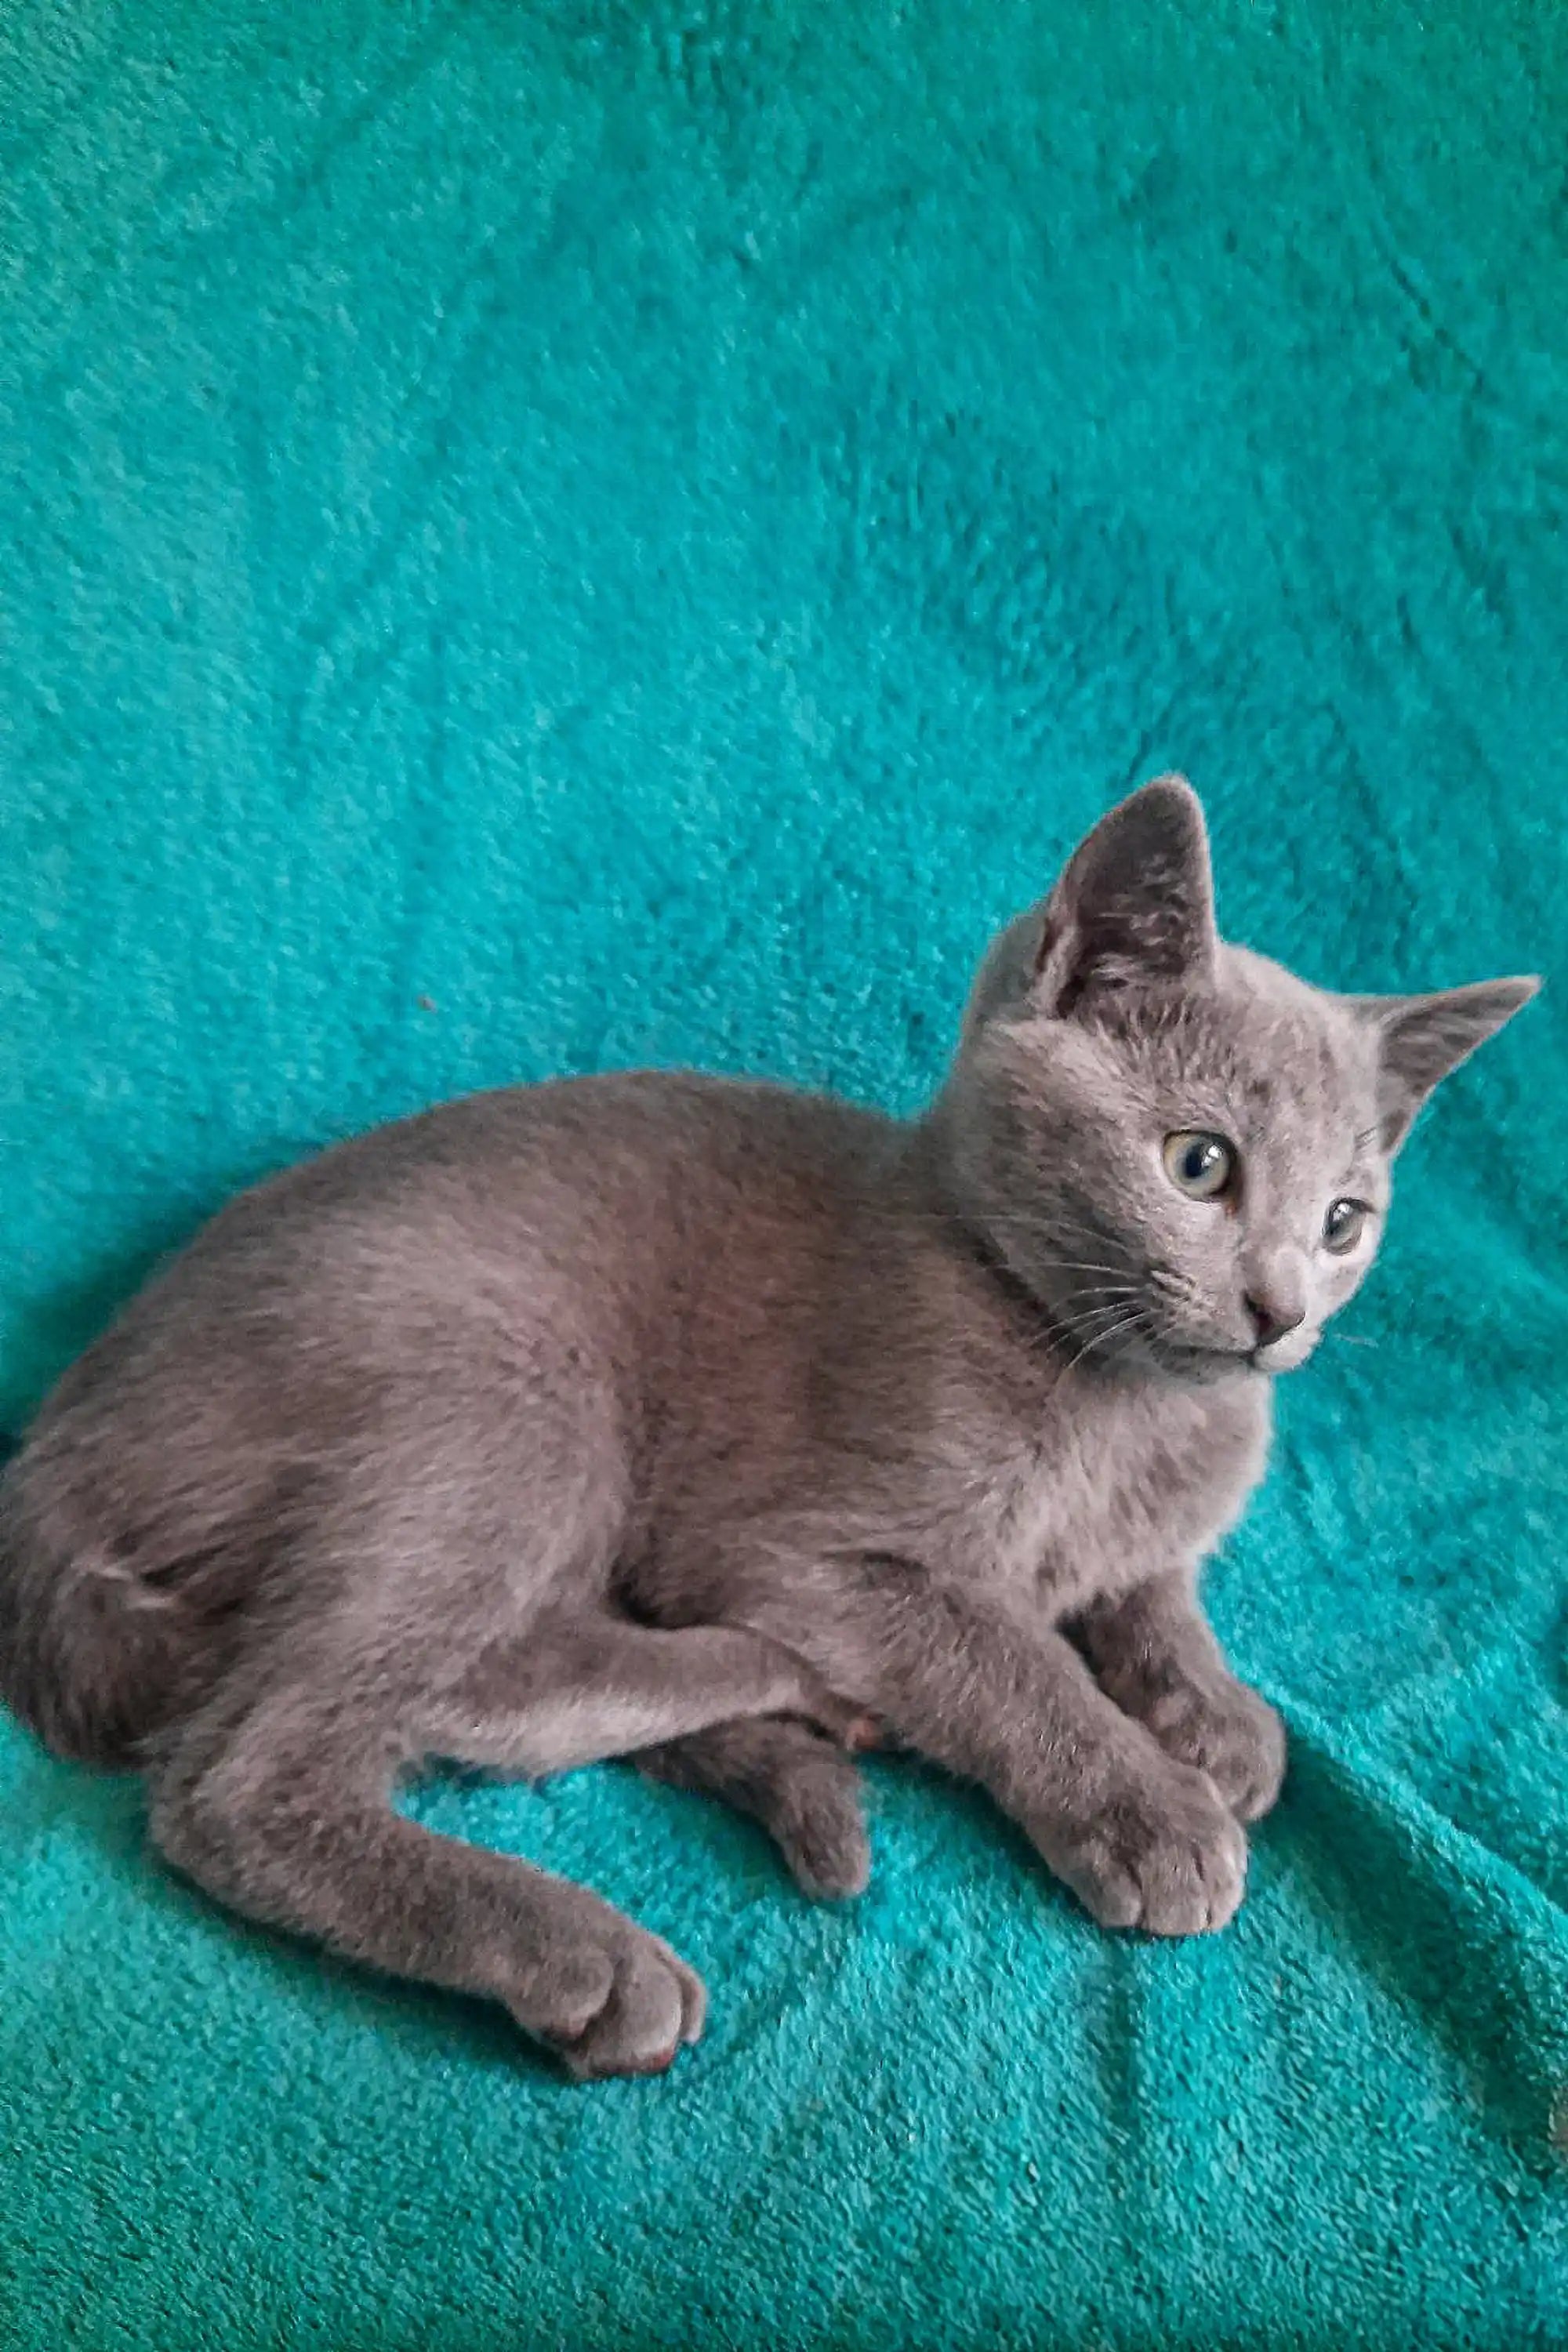 Ukranian Blue Kittens For Sale Aran | Russian Kitten